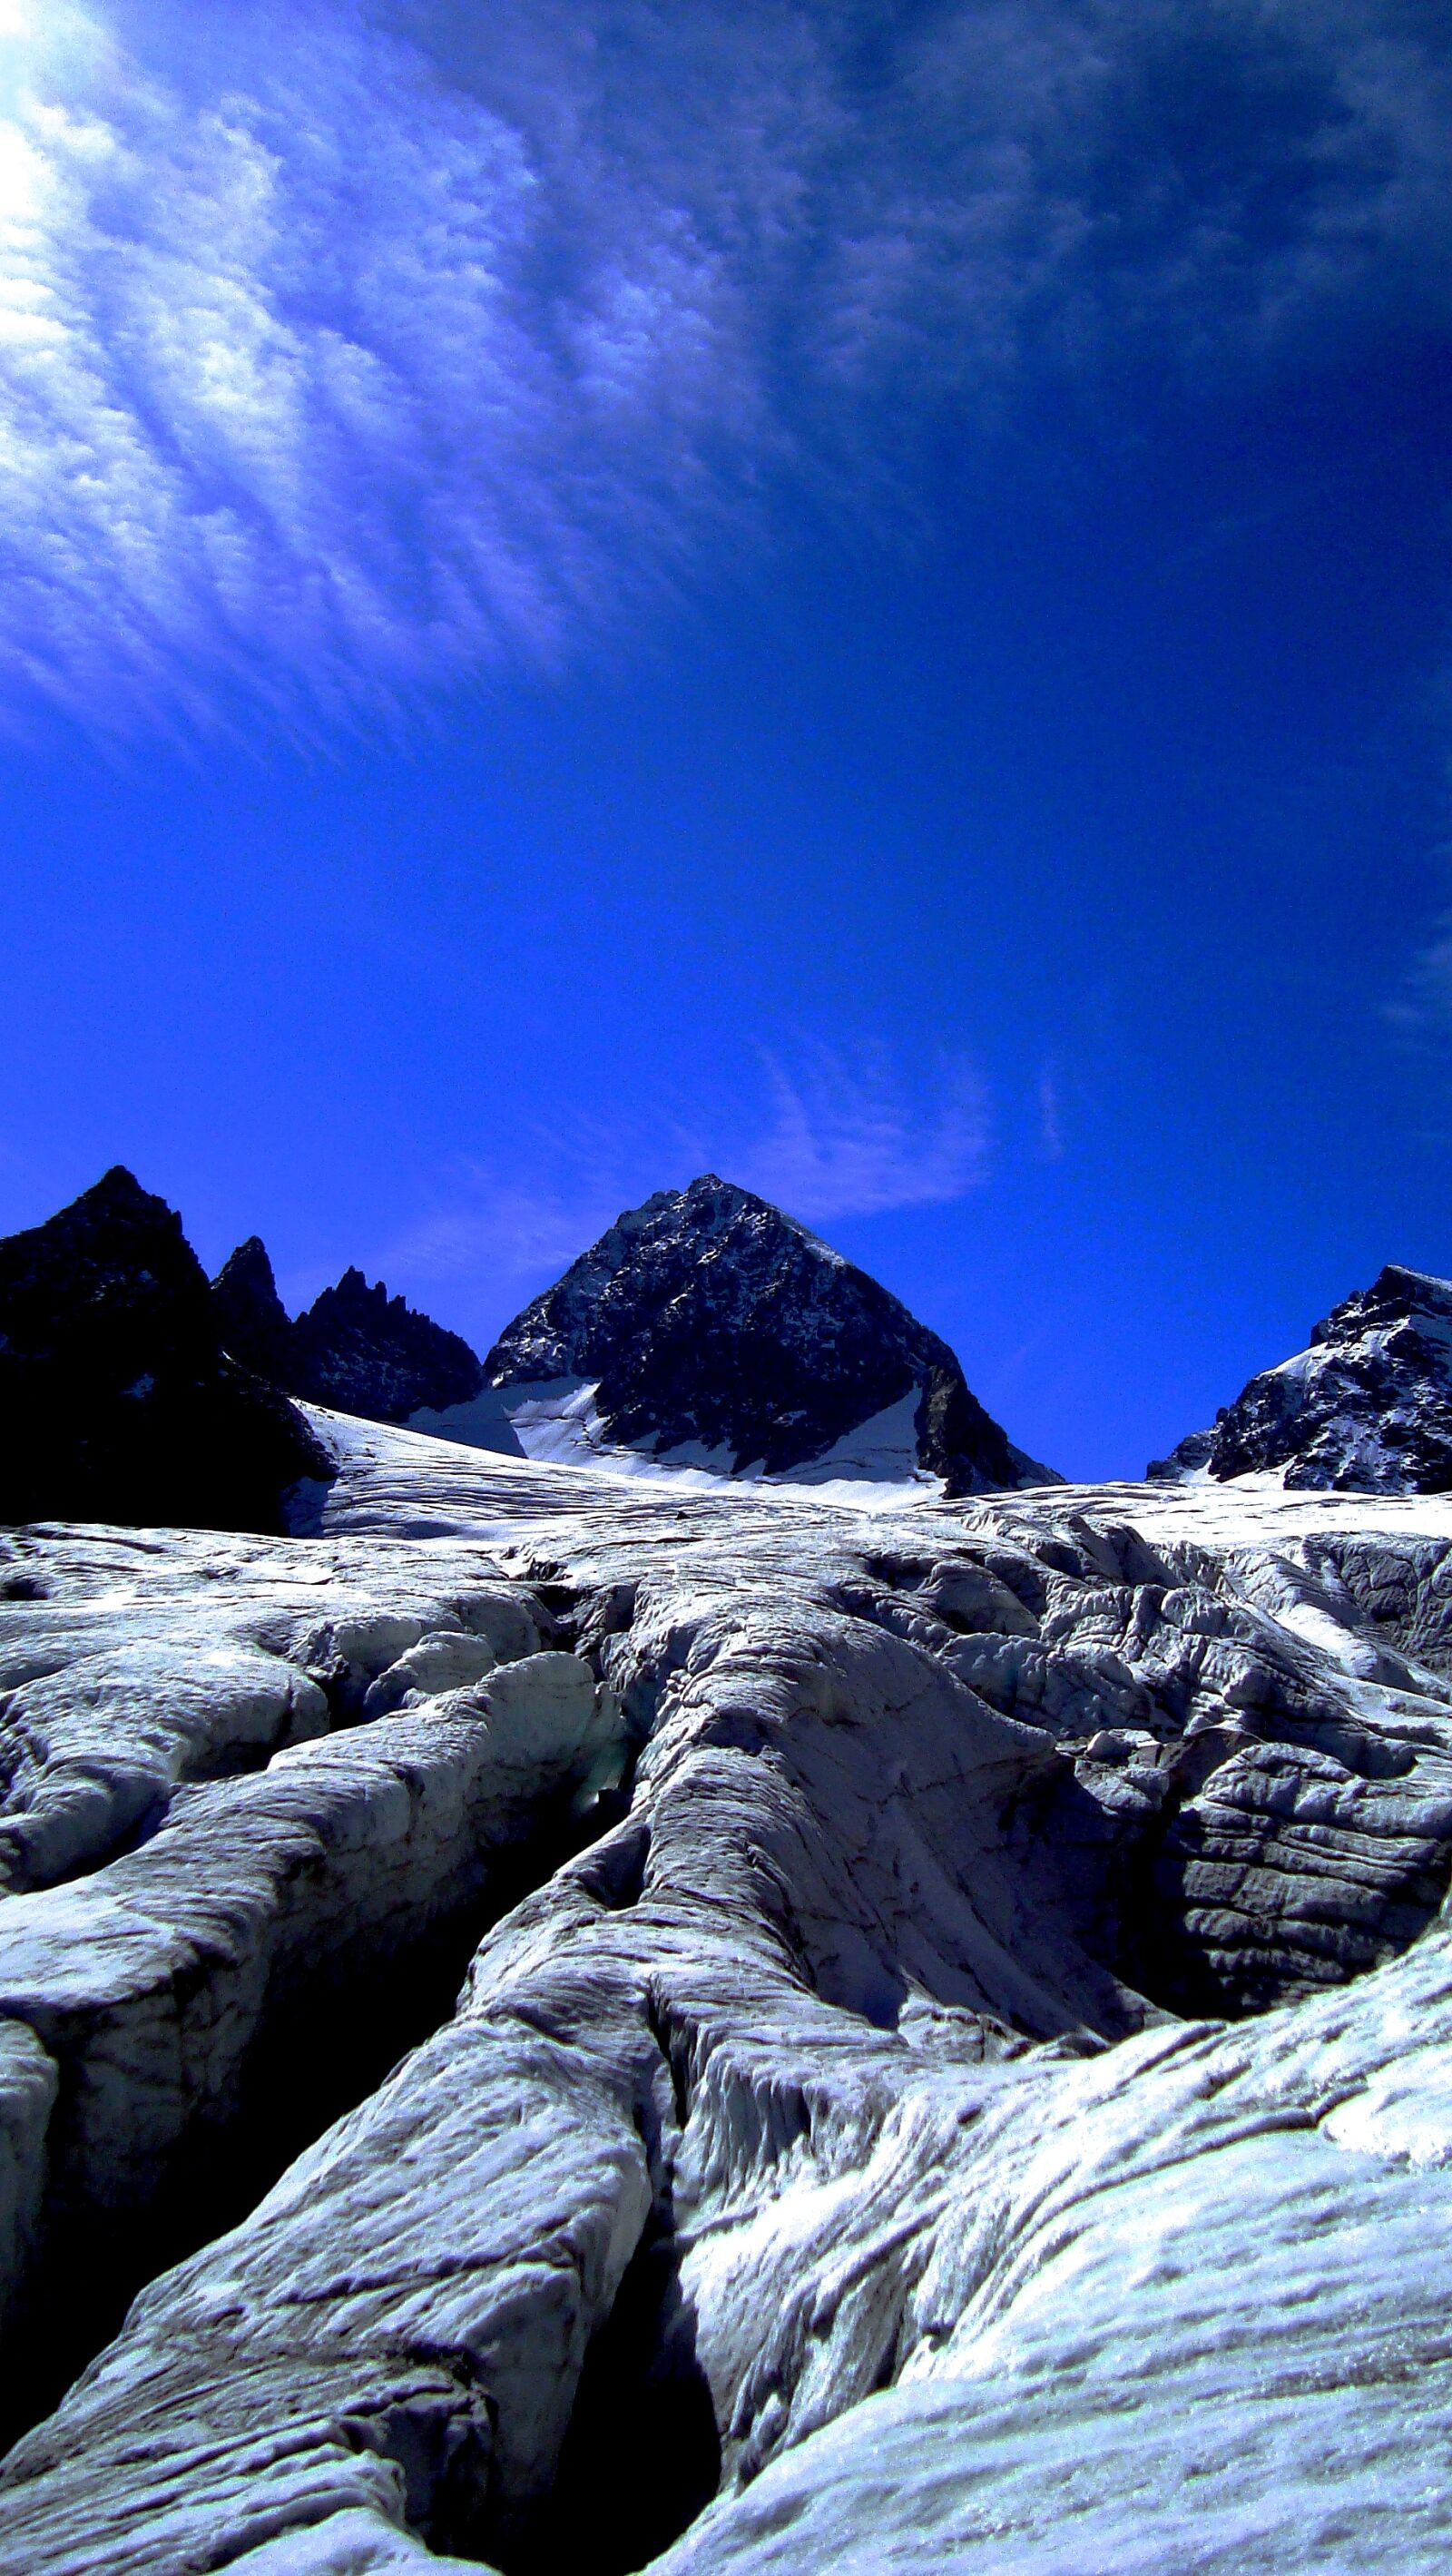 Sony Cyber-shot DSC-W130 sample photo. Landscape, glacier, alpine photography